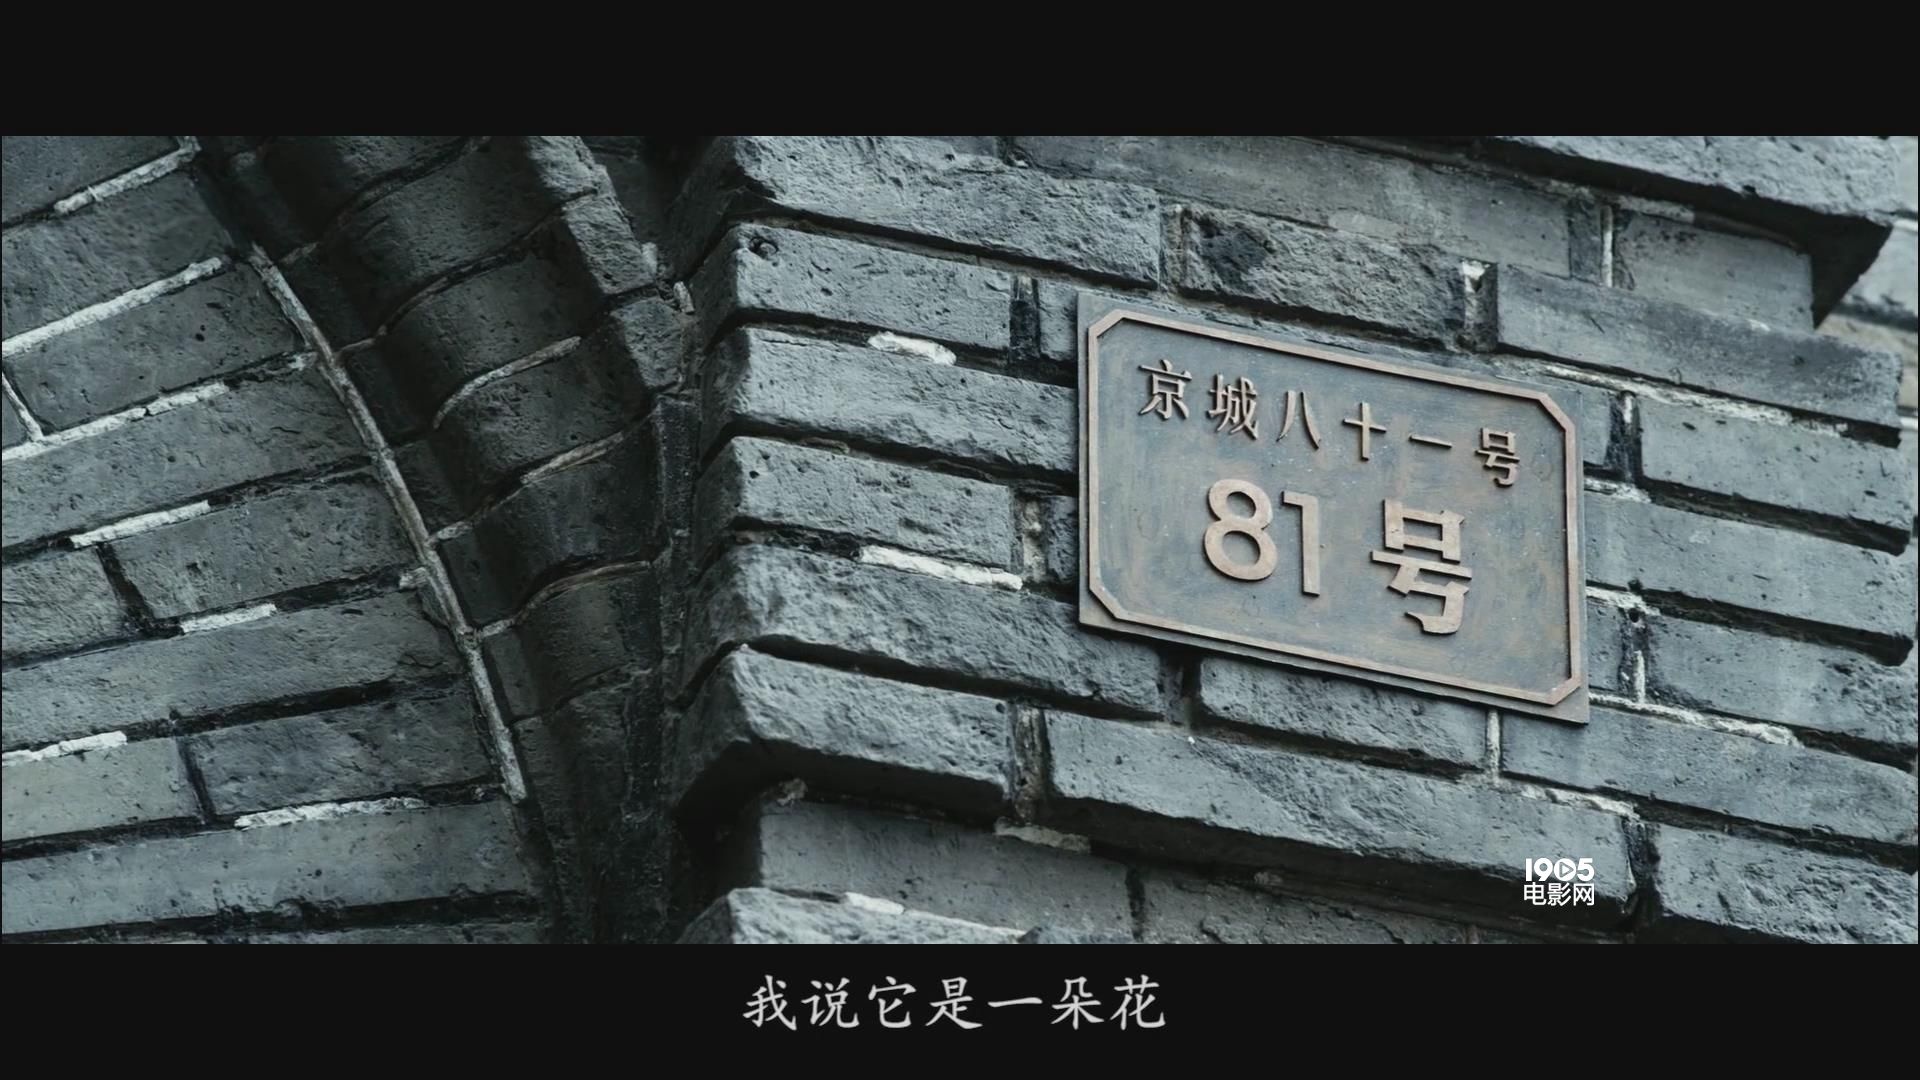 钱人豪:墙壁都是有记忆的 电影《京城81号2》根据朝阳门内大街81号